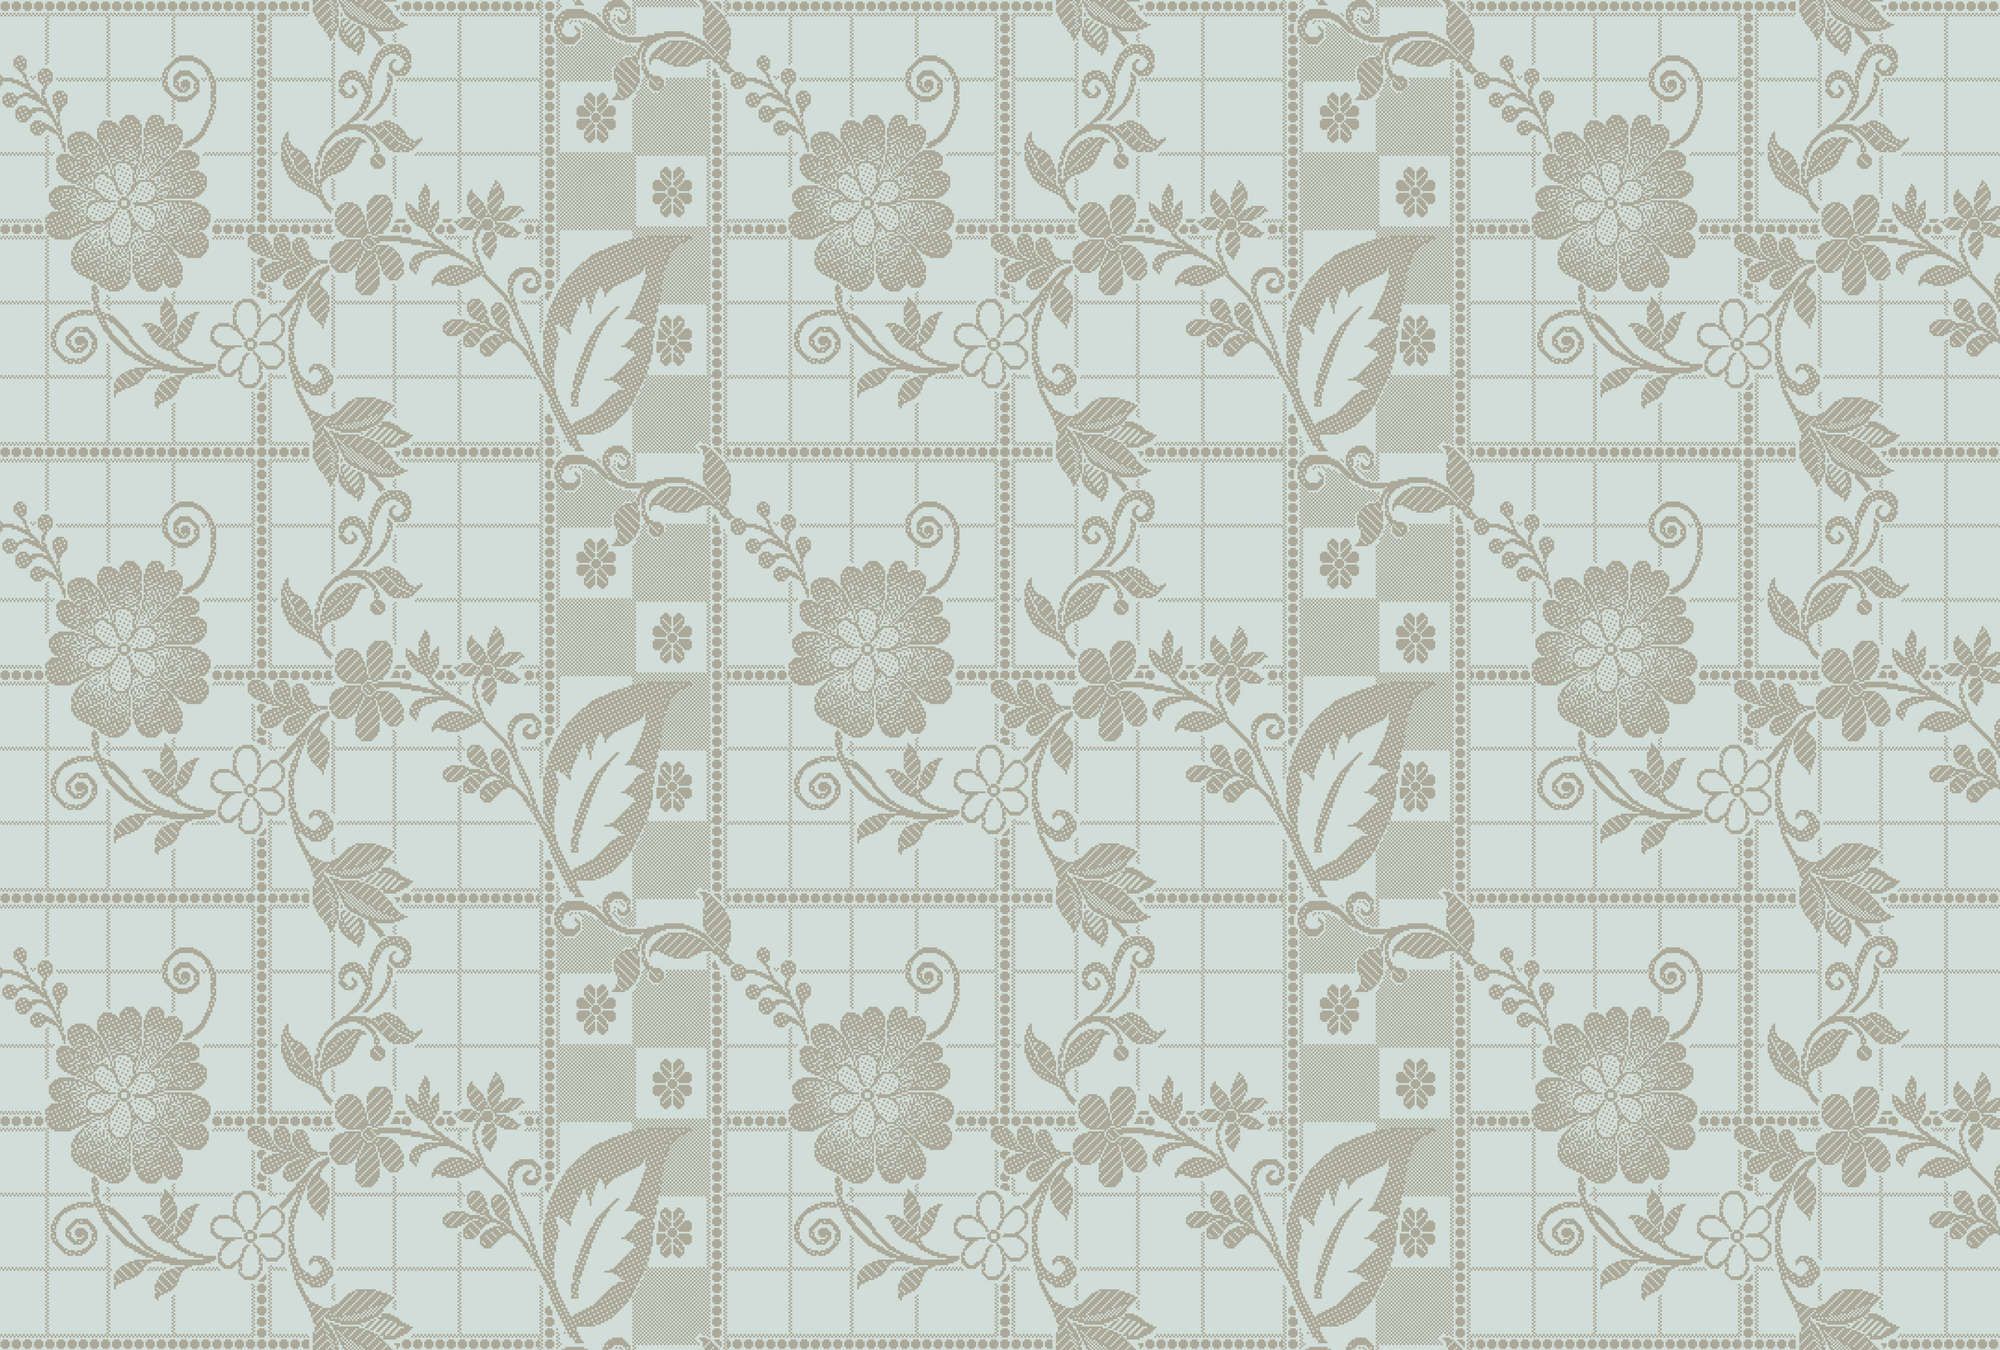             papier peint en papier panoramique »valerie« - Petits carrés style pixel avec fleurs - vert menthe clair | Intissé lisse, légèrement nacré
        